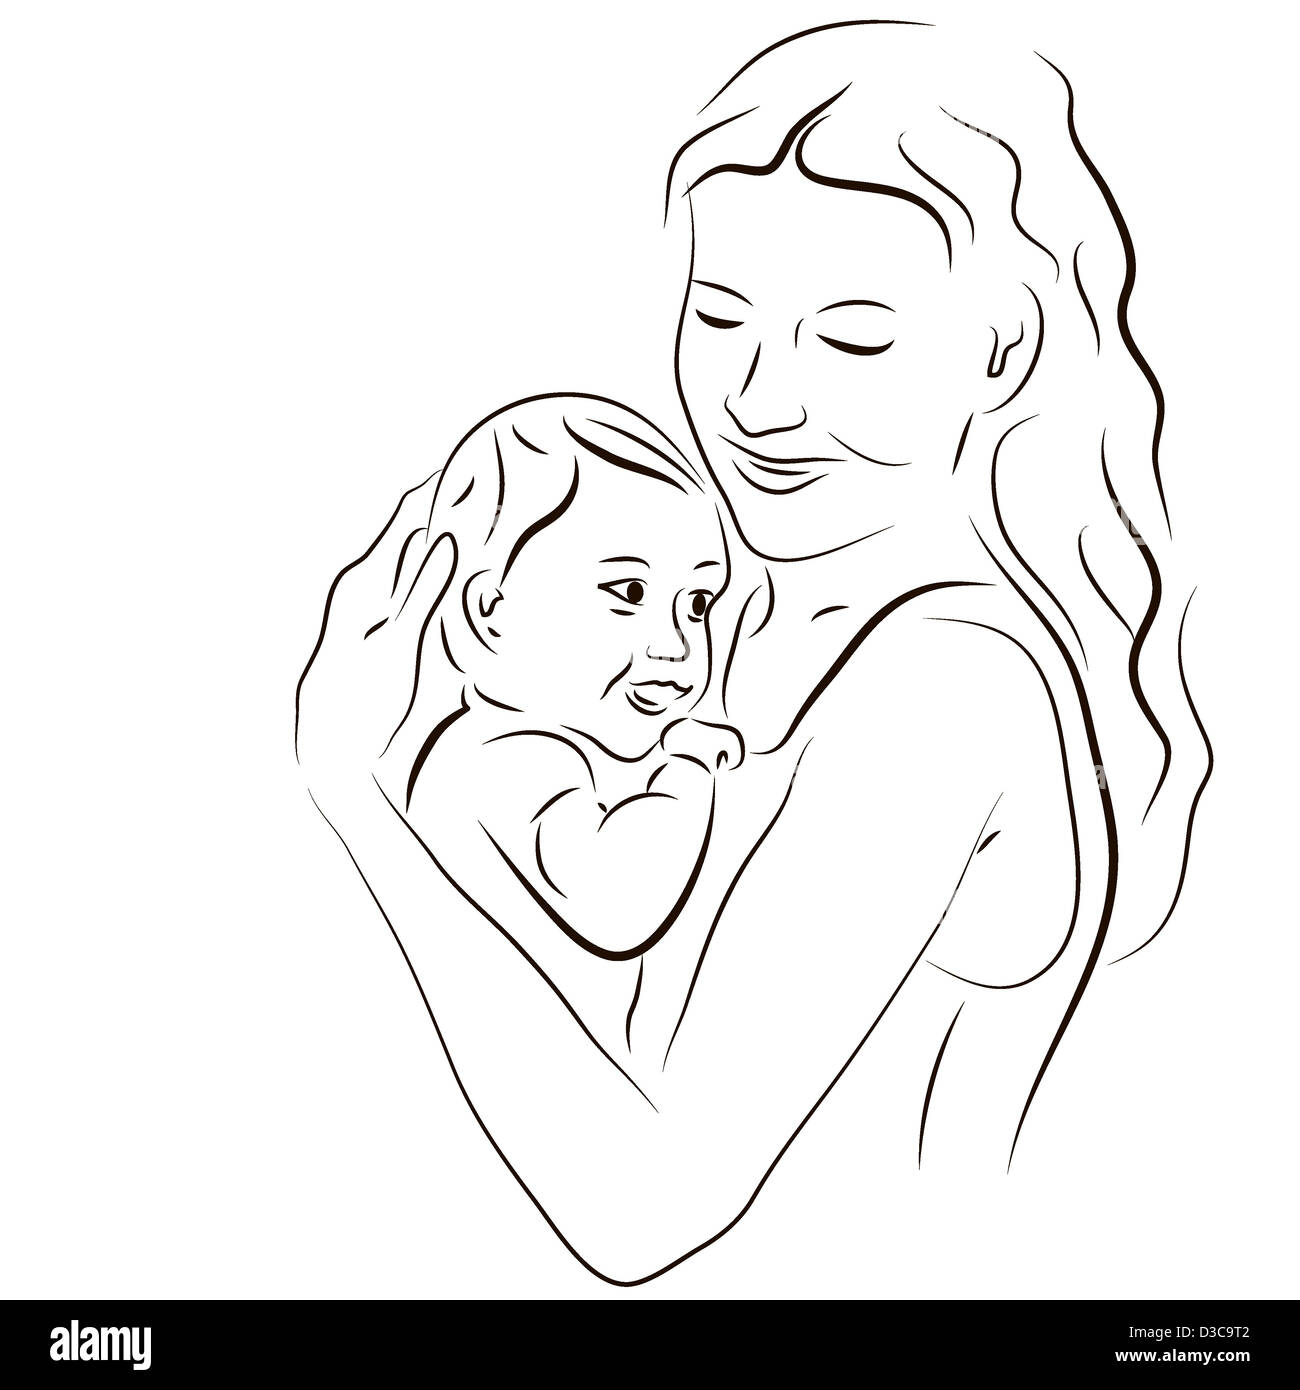 Нарисовать маму и ребёнка для оформления